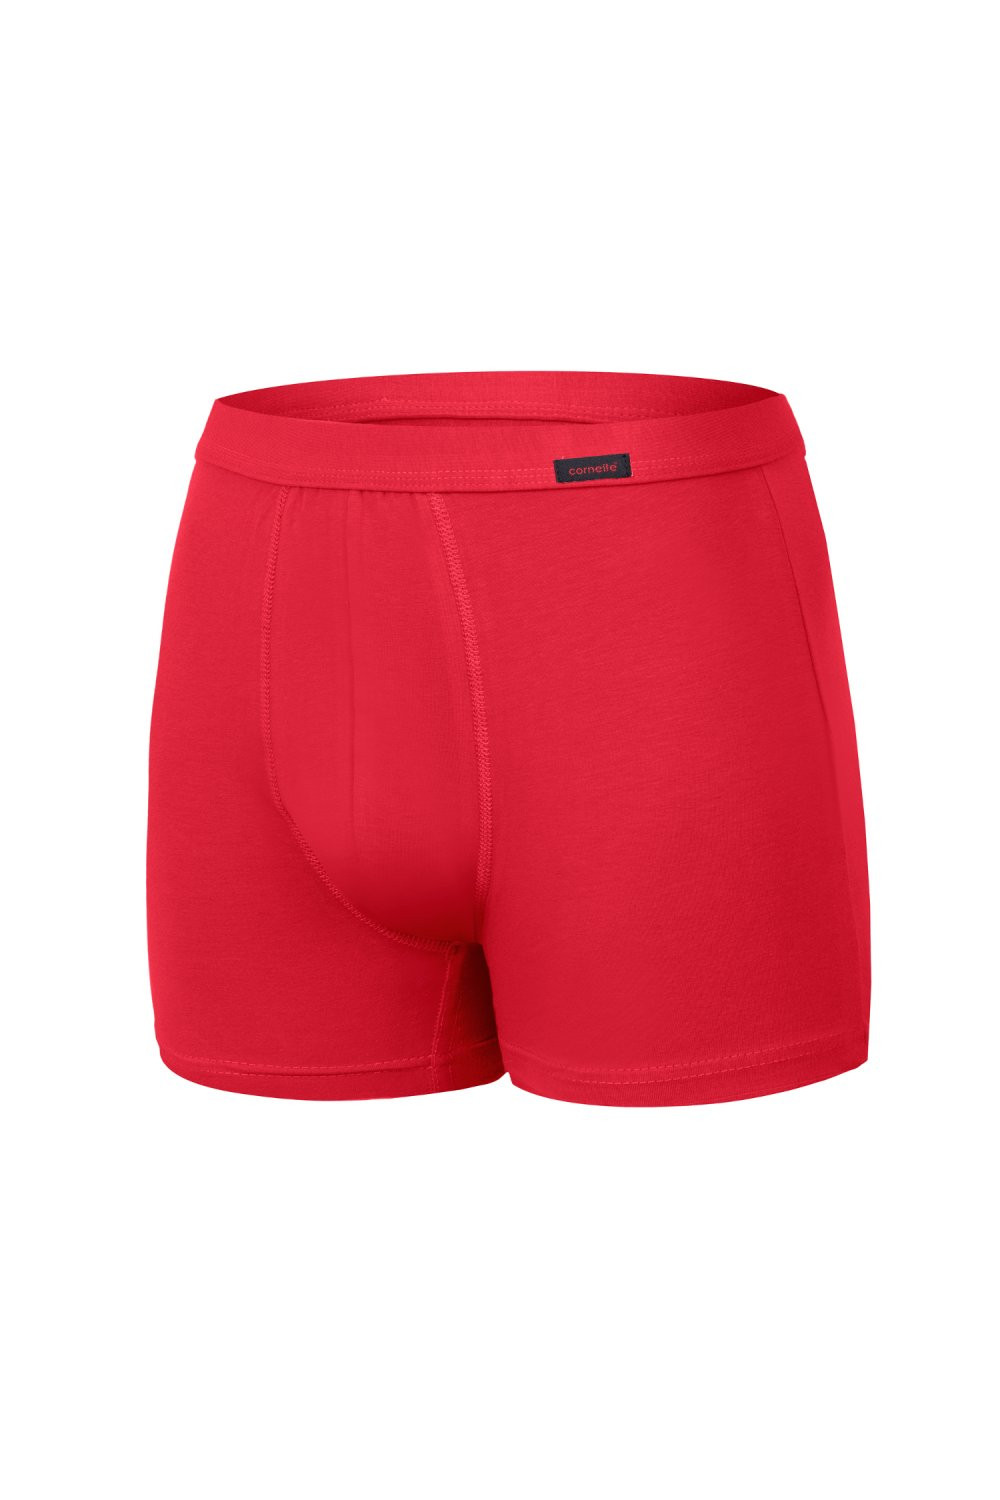 Pánské boxerky 092 Authentic plus red - CORNETTE Červená 4XL